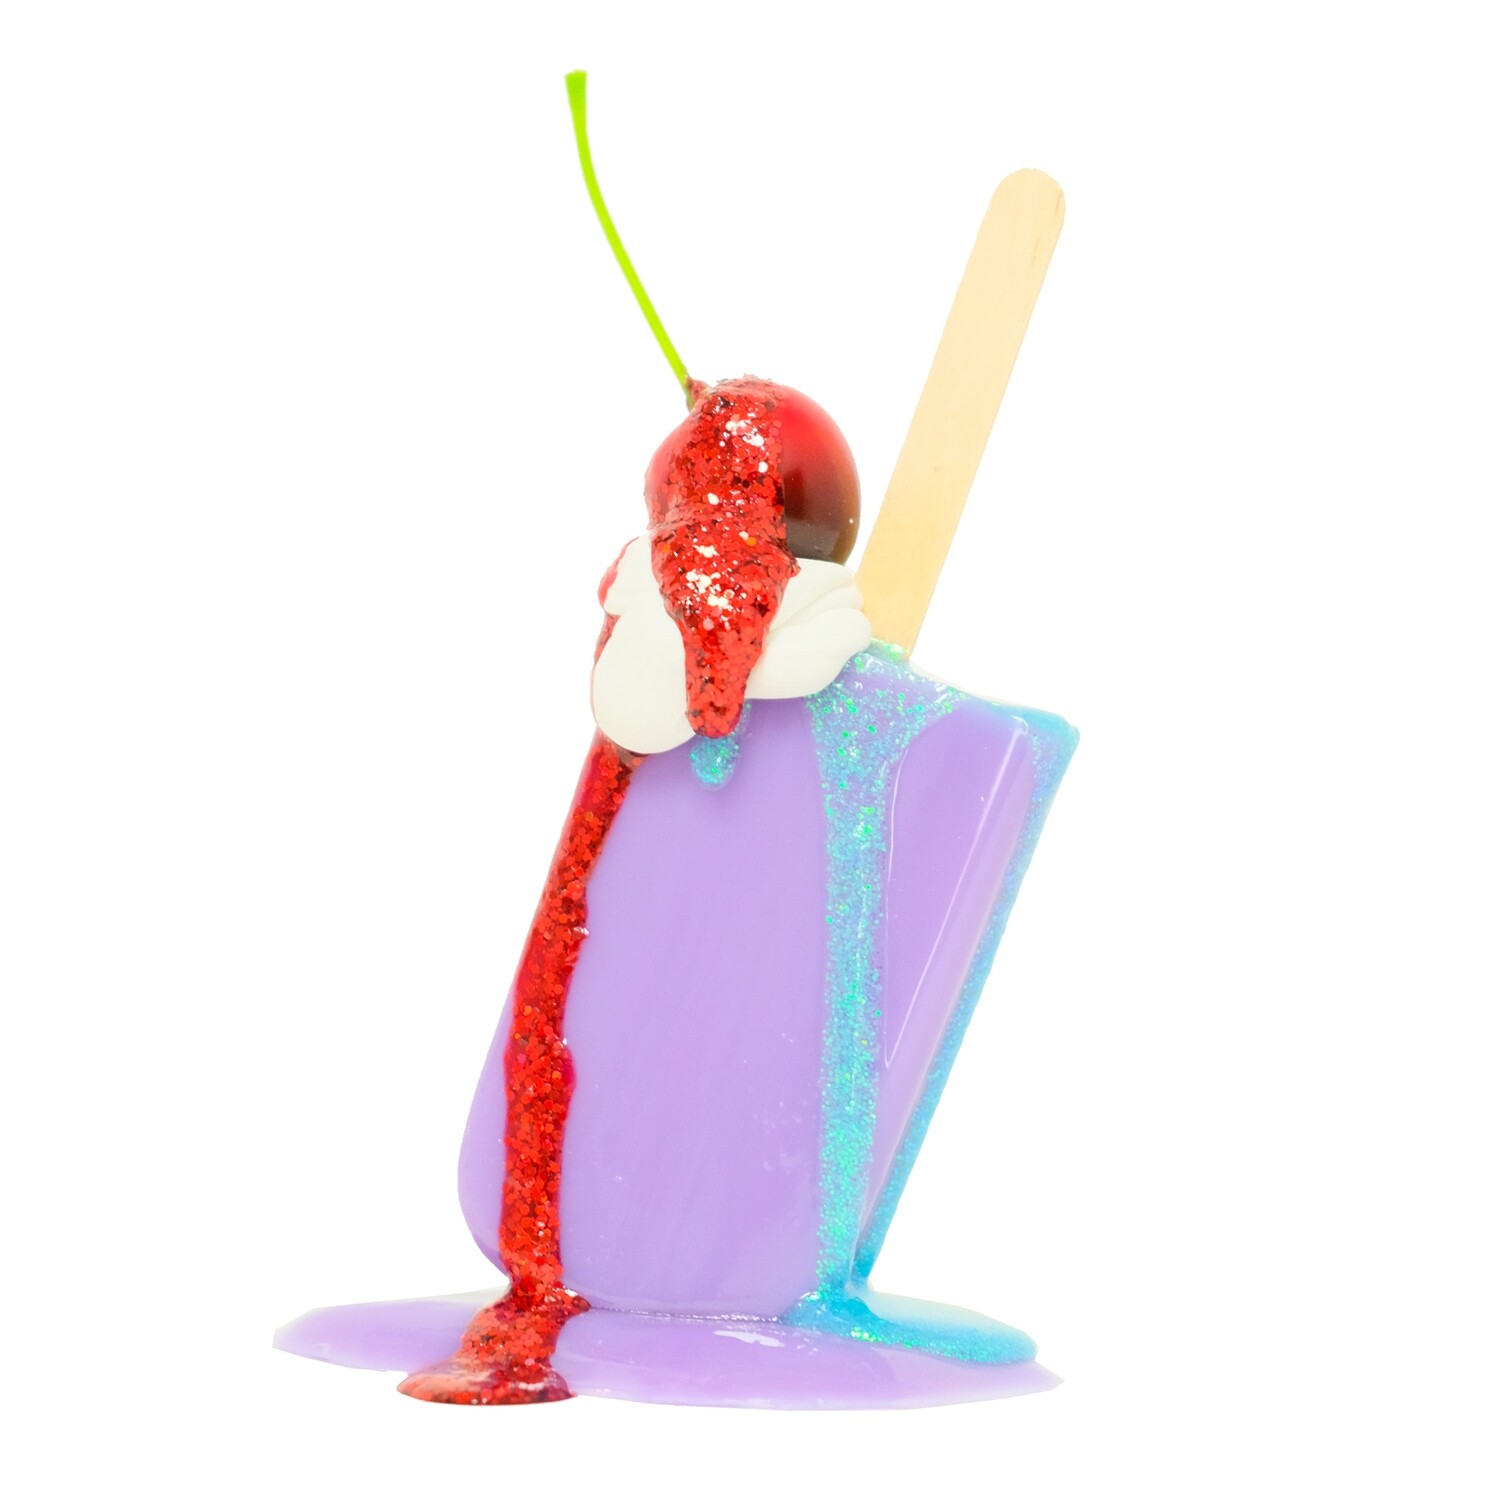 Melting Popsicle Art - 10 - Original Melting Pops